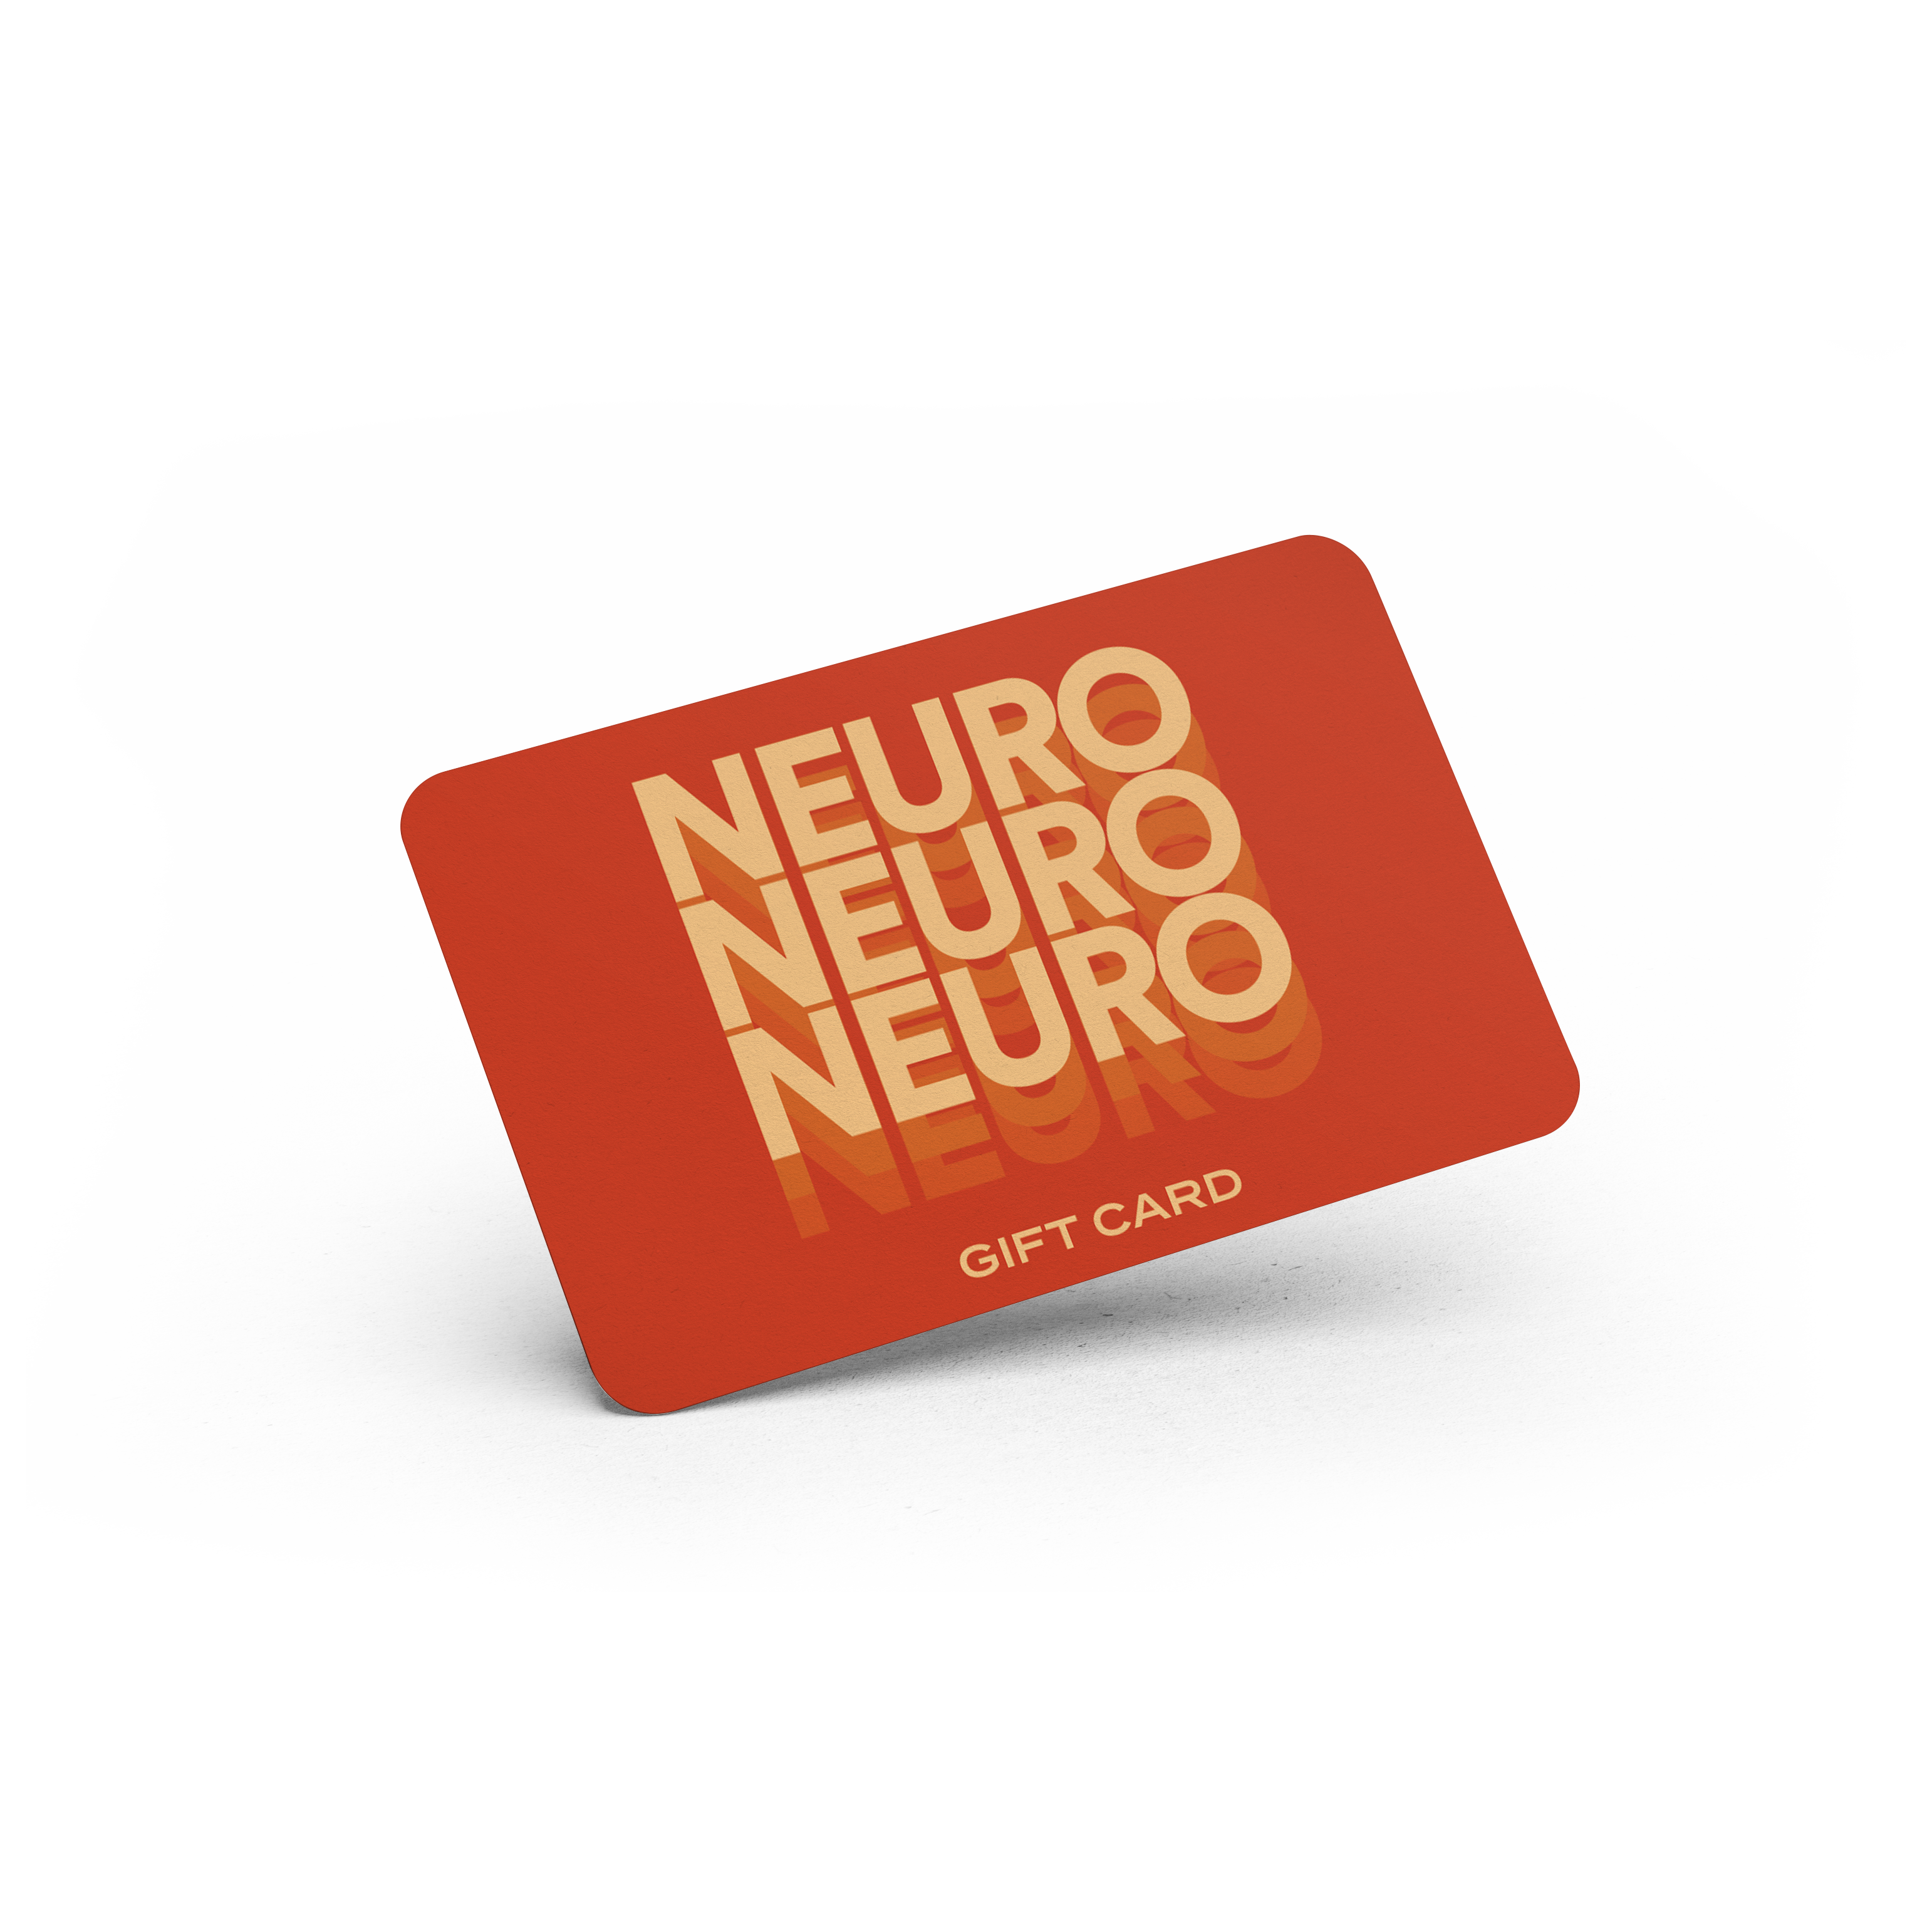 Neuro Gift Card - Neuro